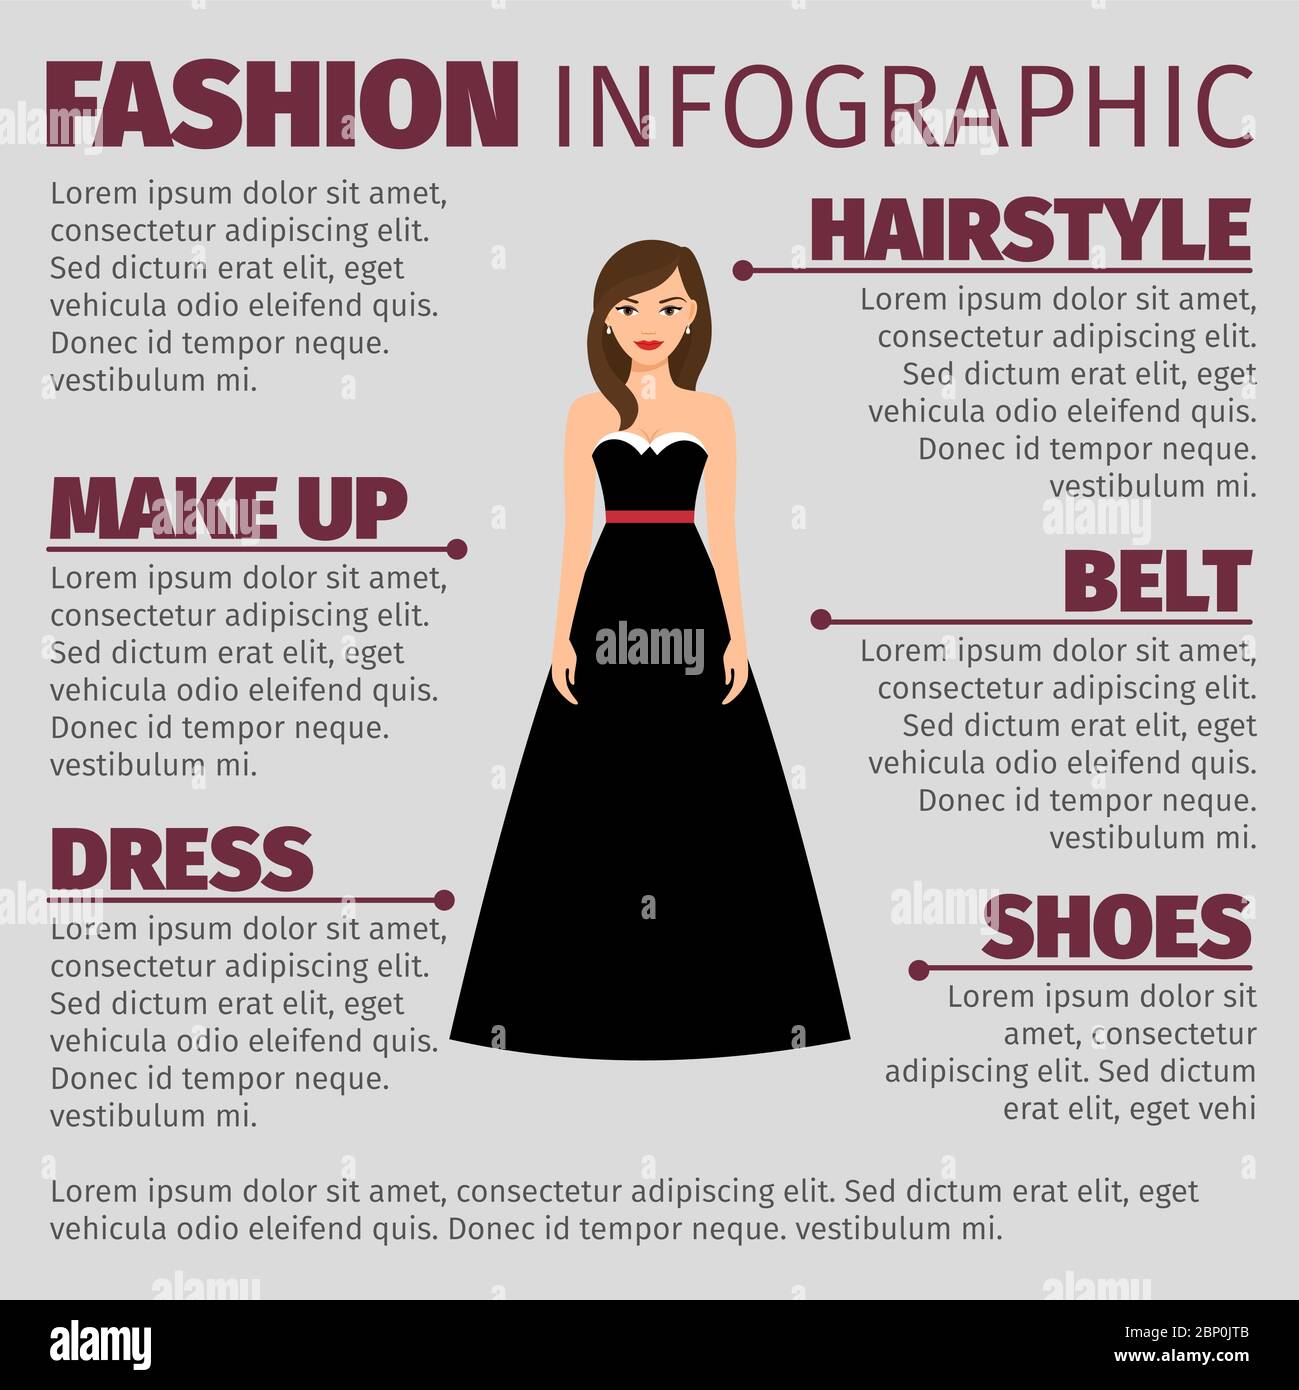 Infographie de mode avec brunette dans une large robe noire. Illustration vectorielle Illustration de Vecteur